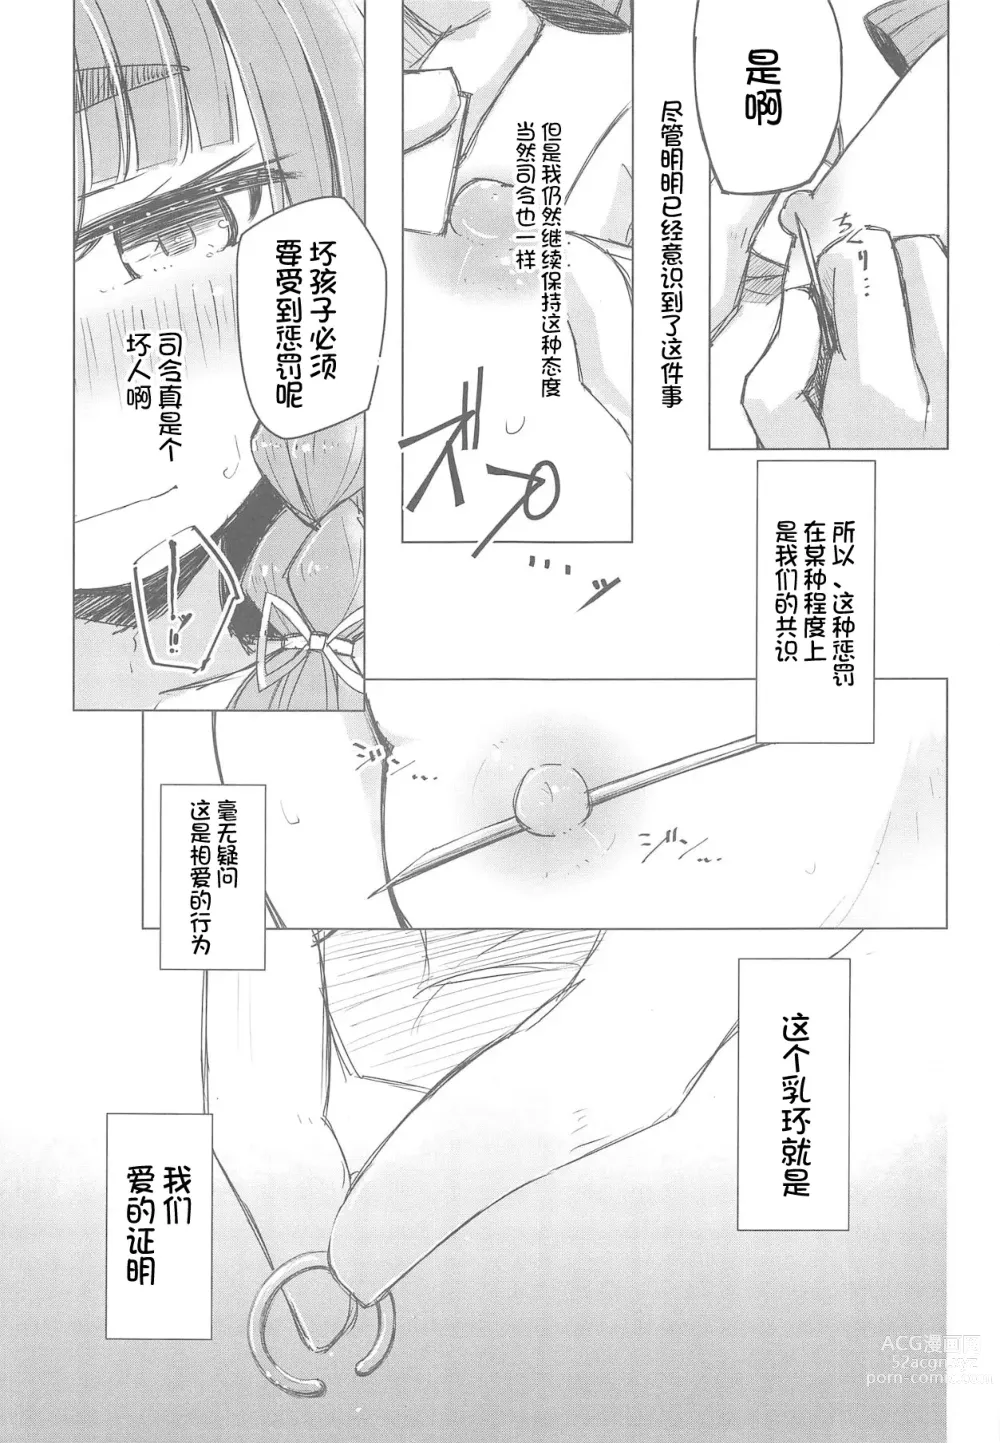 Page 5 of doujinshi Piercing Etorofu